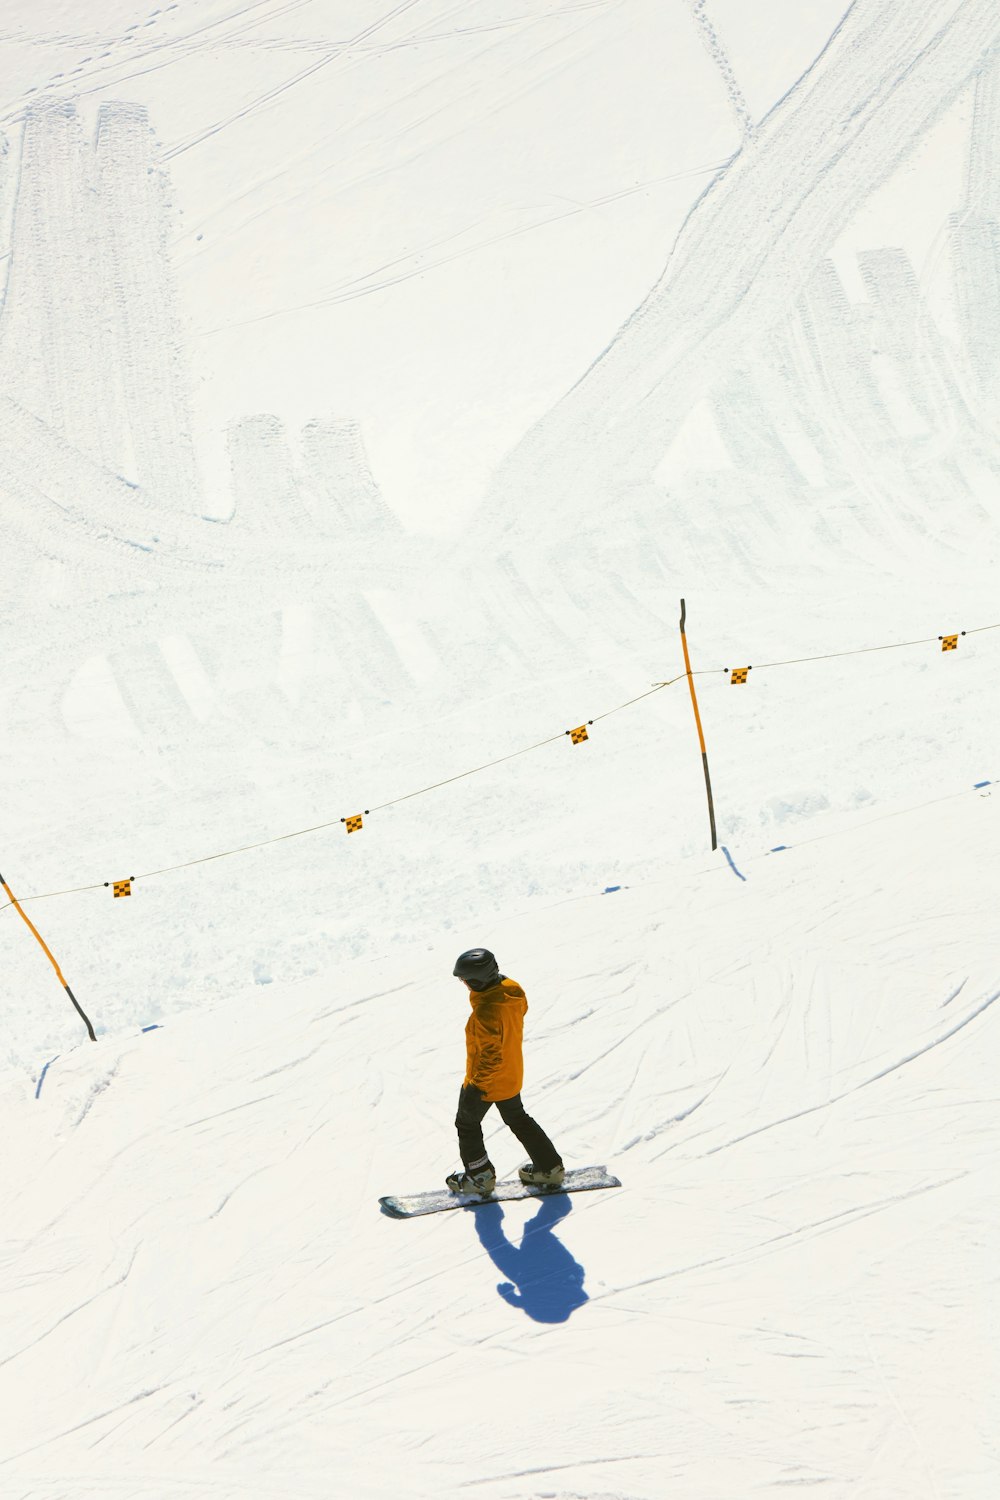 Un homme dévalant une pente enneigée en snowboard